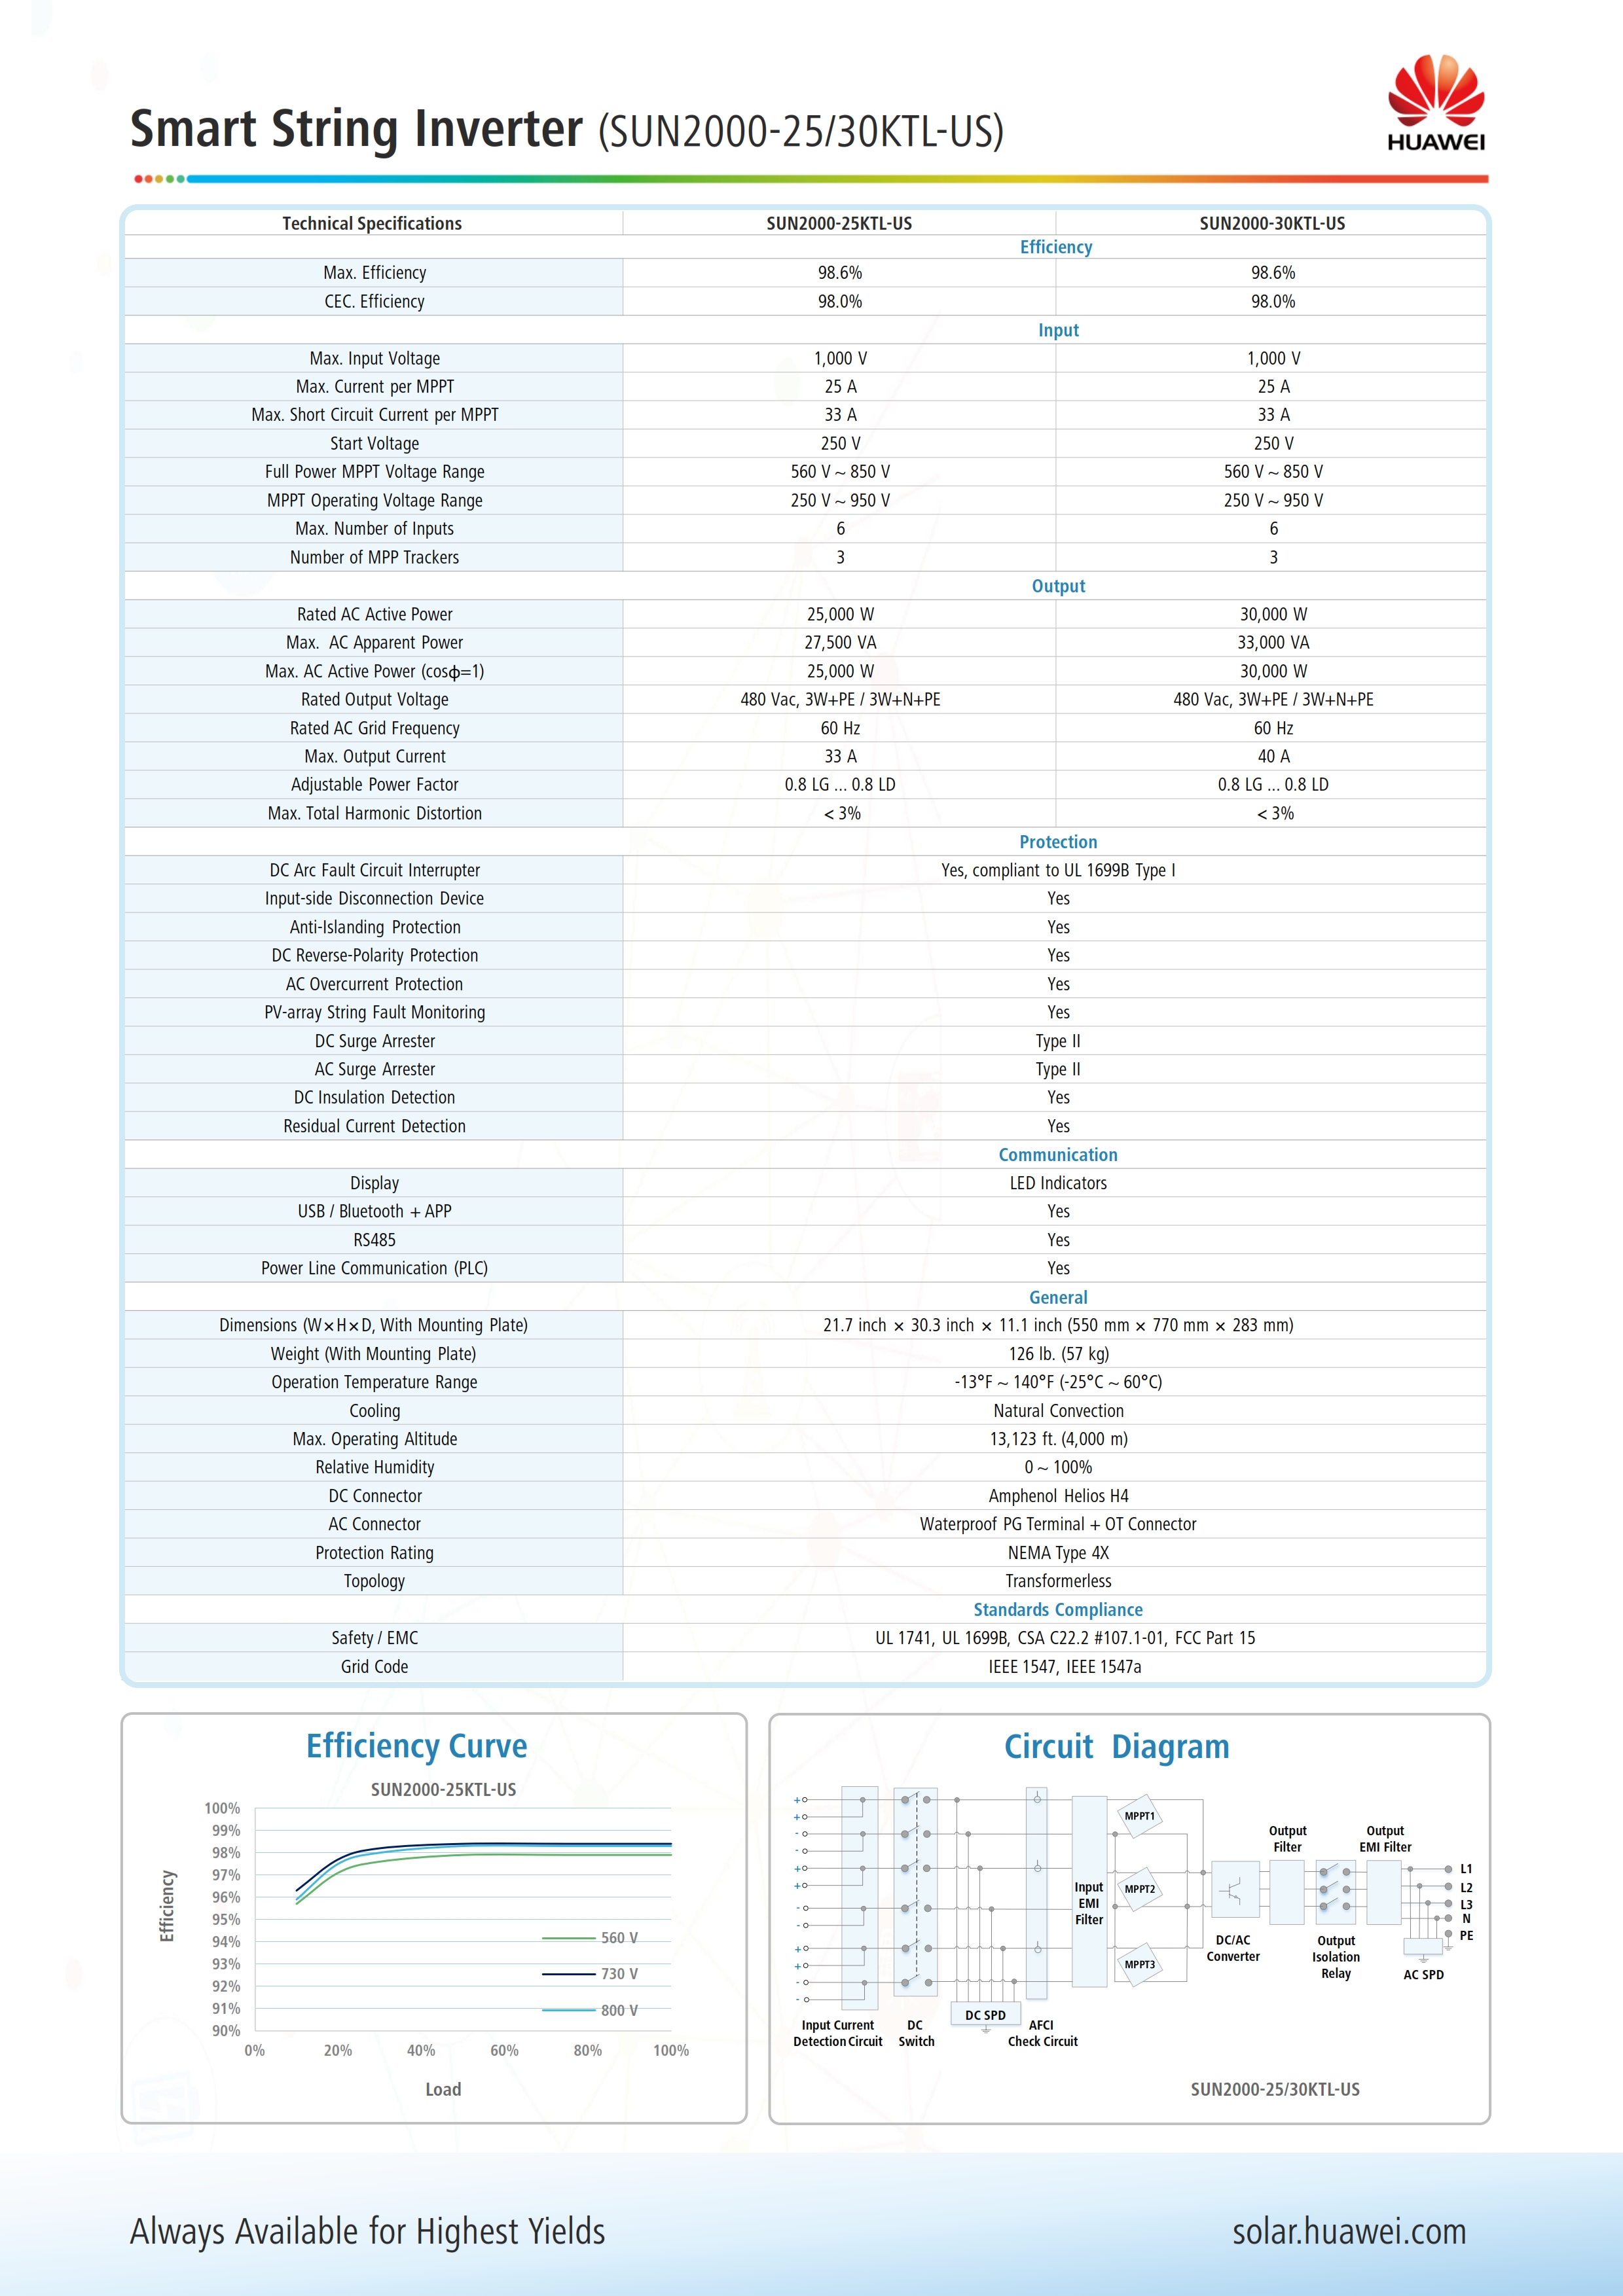 03 Huawei SUN2000-25_30KTL-US Datasheet - (20170616)_002